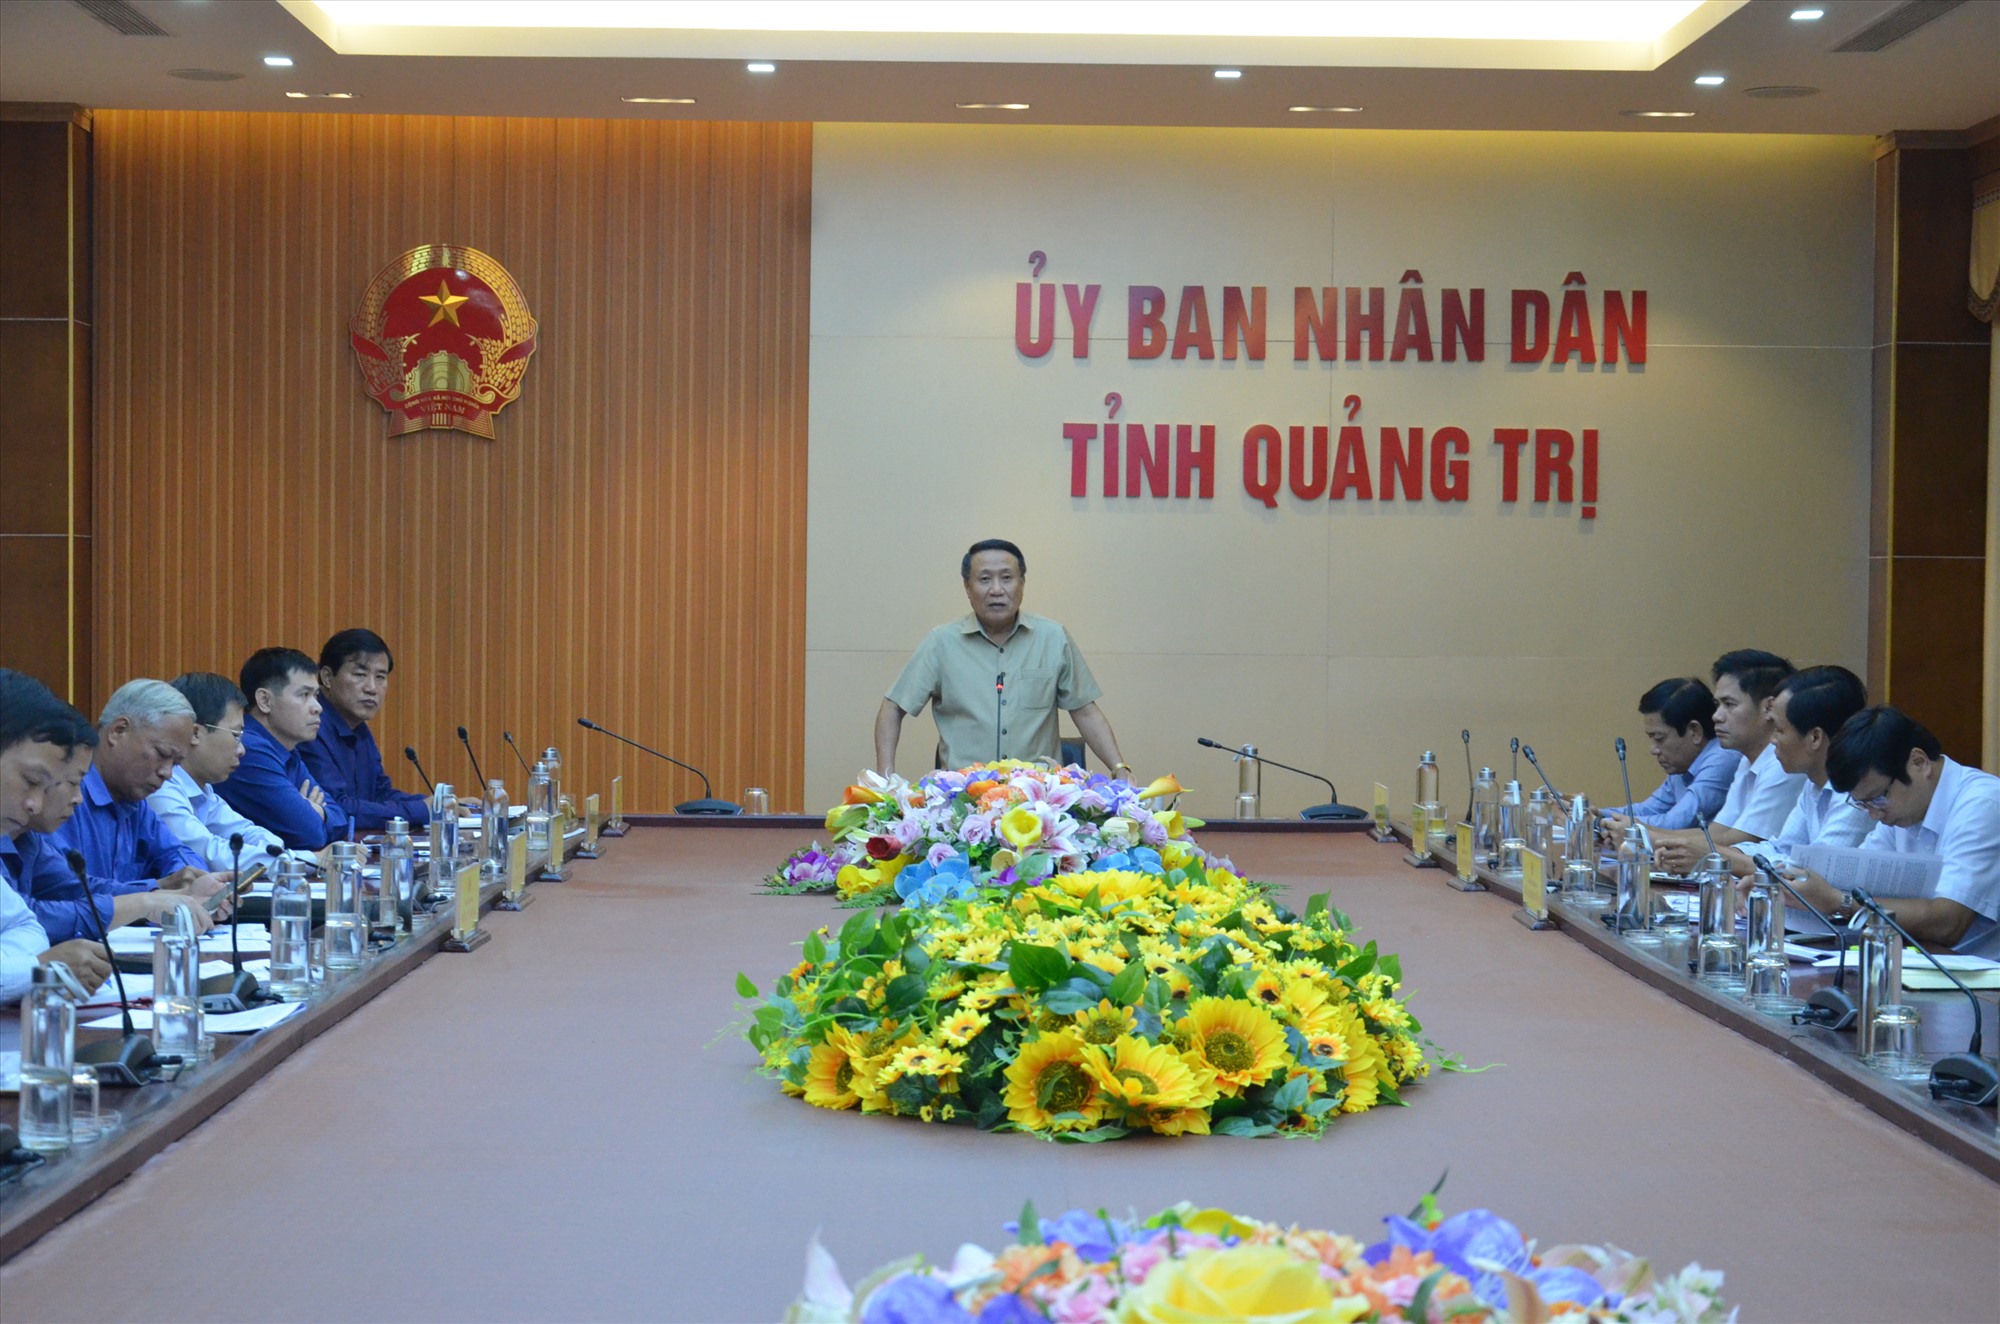 Phó Chủ tịch Thường trực UBND tỉnh Hà Sỹ Đồng phát biểu tại phiên họp xử lý các vướng mắc các dự án phục vụ phát triển kinh tế biển - Ảnh: Lê Minh